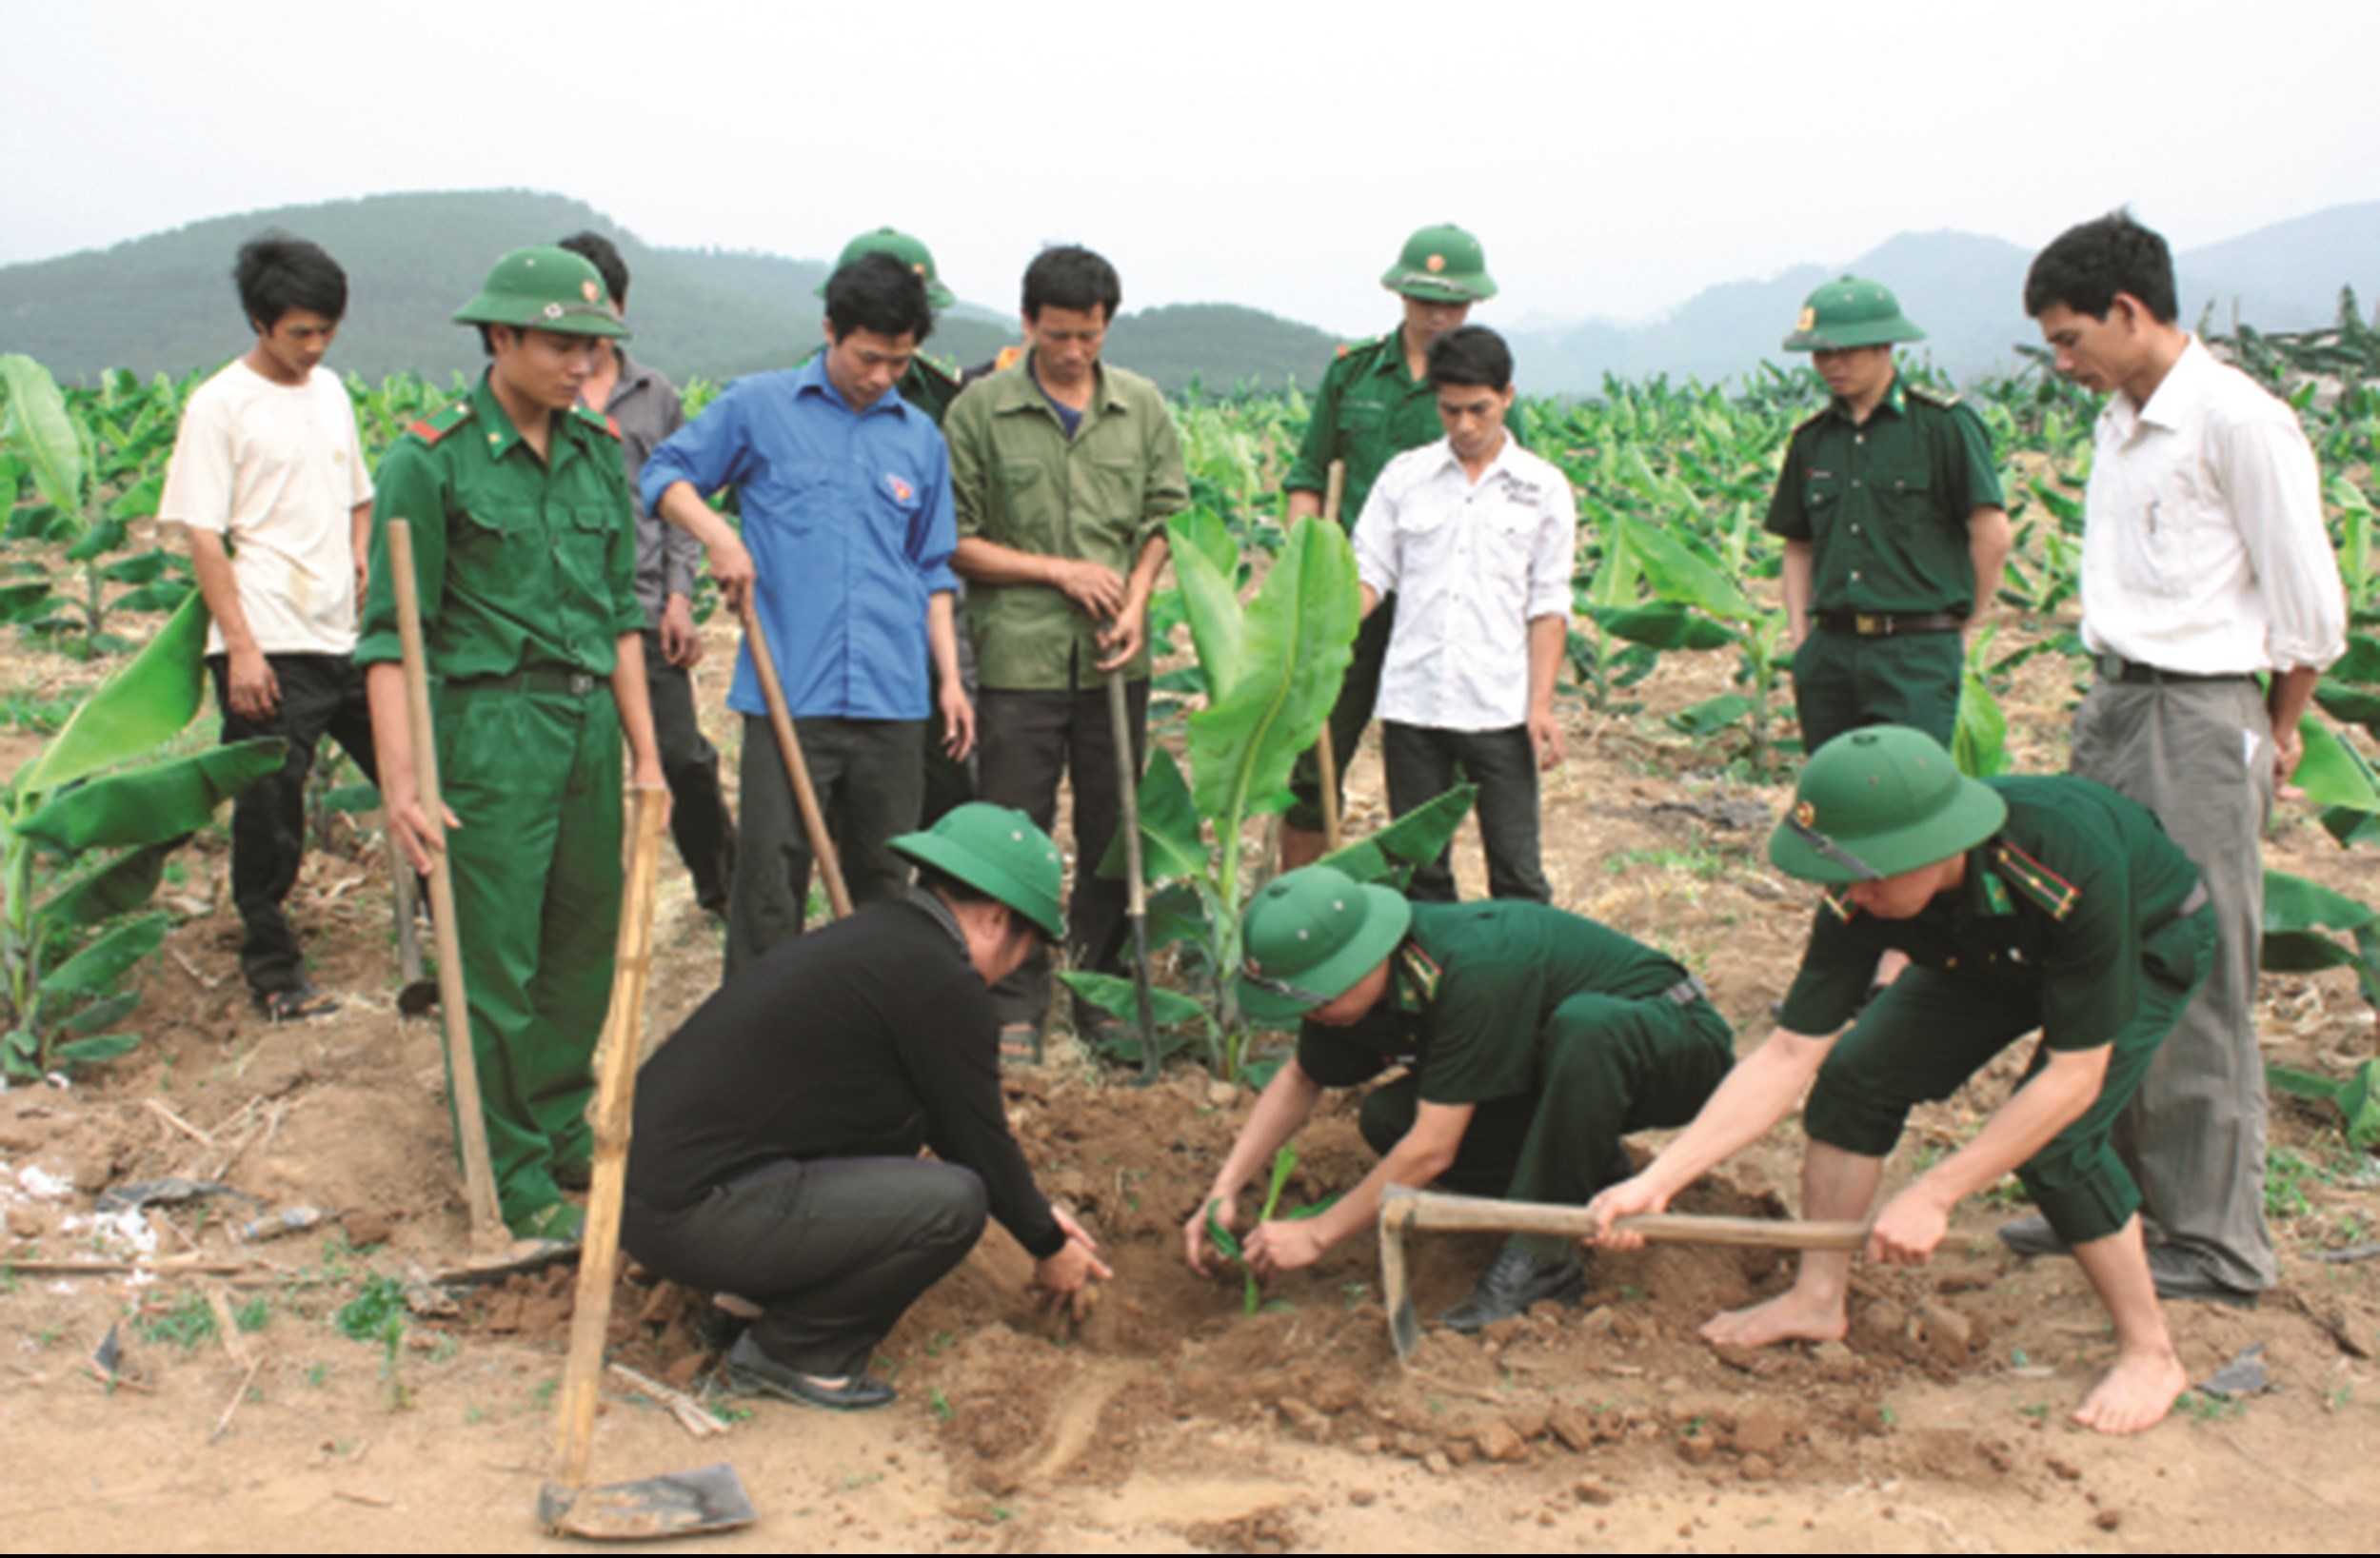 Cán bộ, chiến sĩ Đồn Biên phòng Bản Lầu, BĐBP Lào Cai hướng dẫn bà con kỹ thuật chăm sóc cây chuối